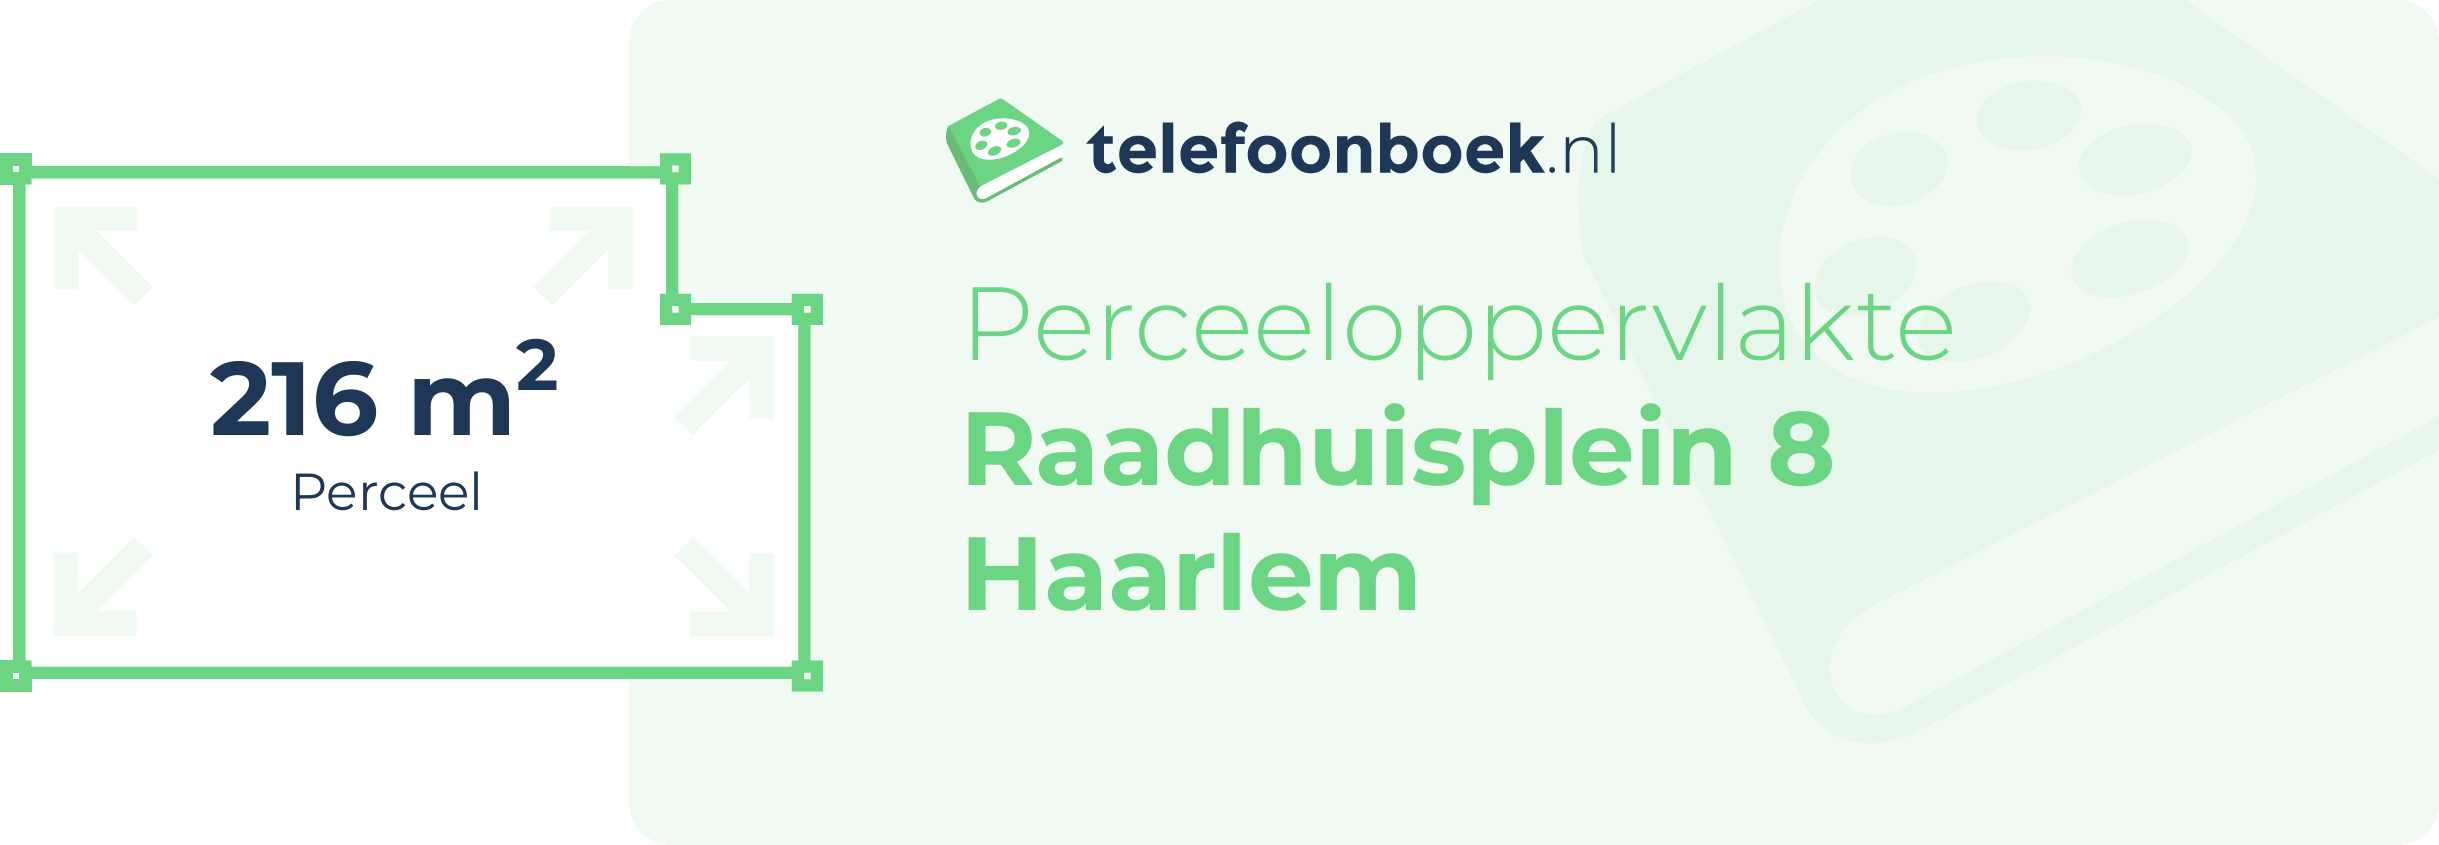 Perceeloppervlakte Raadhuisplein 8 Haarlem